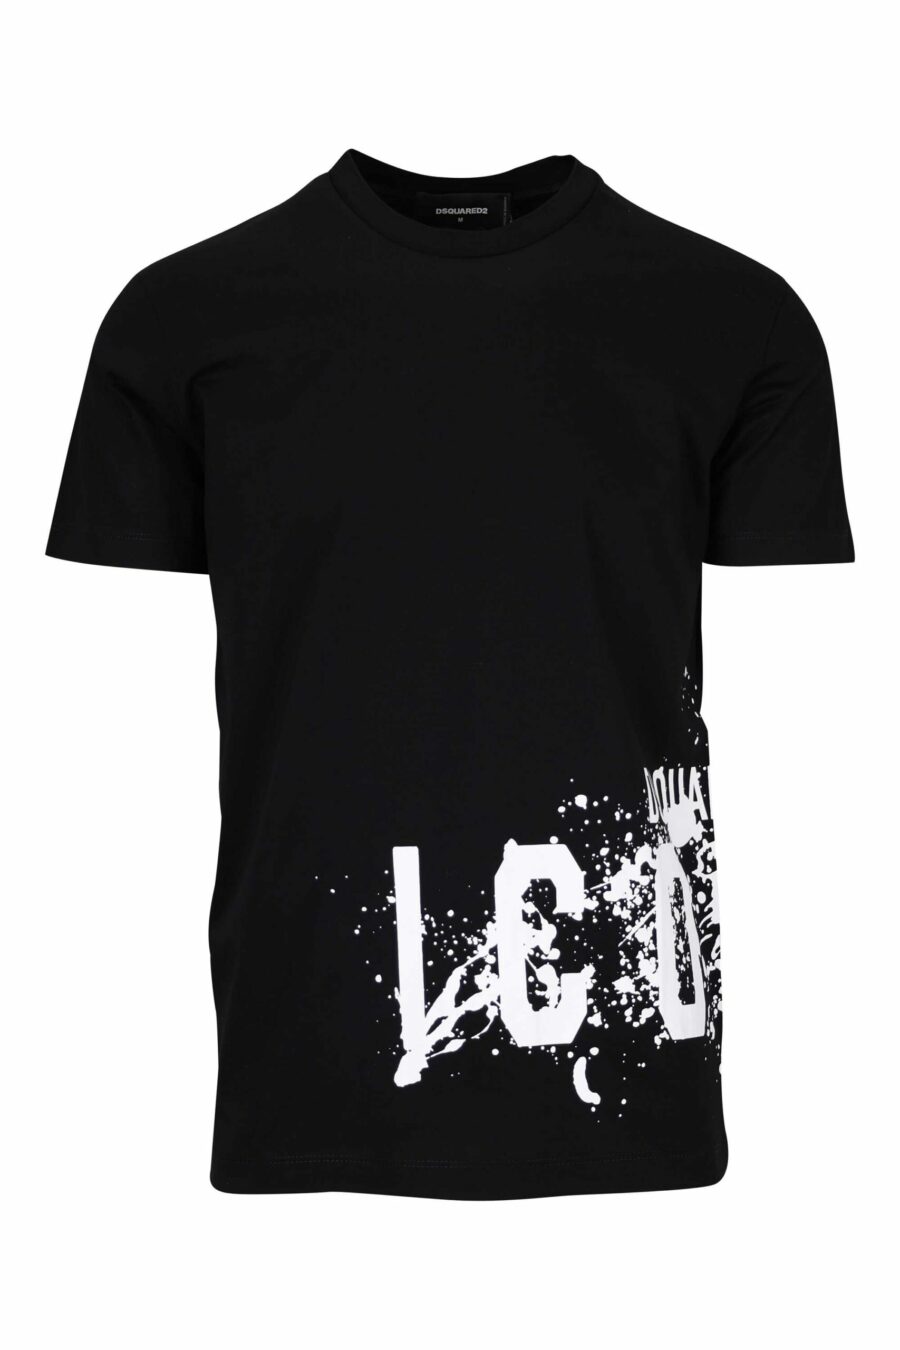 Camiseta negra con maxilogo "icon splash" bajo - 8054148293758 scaled